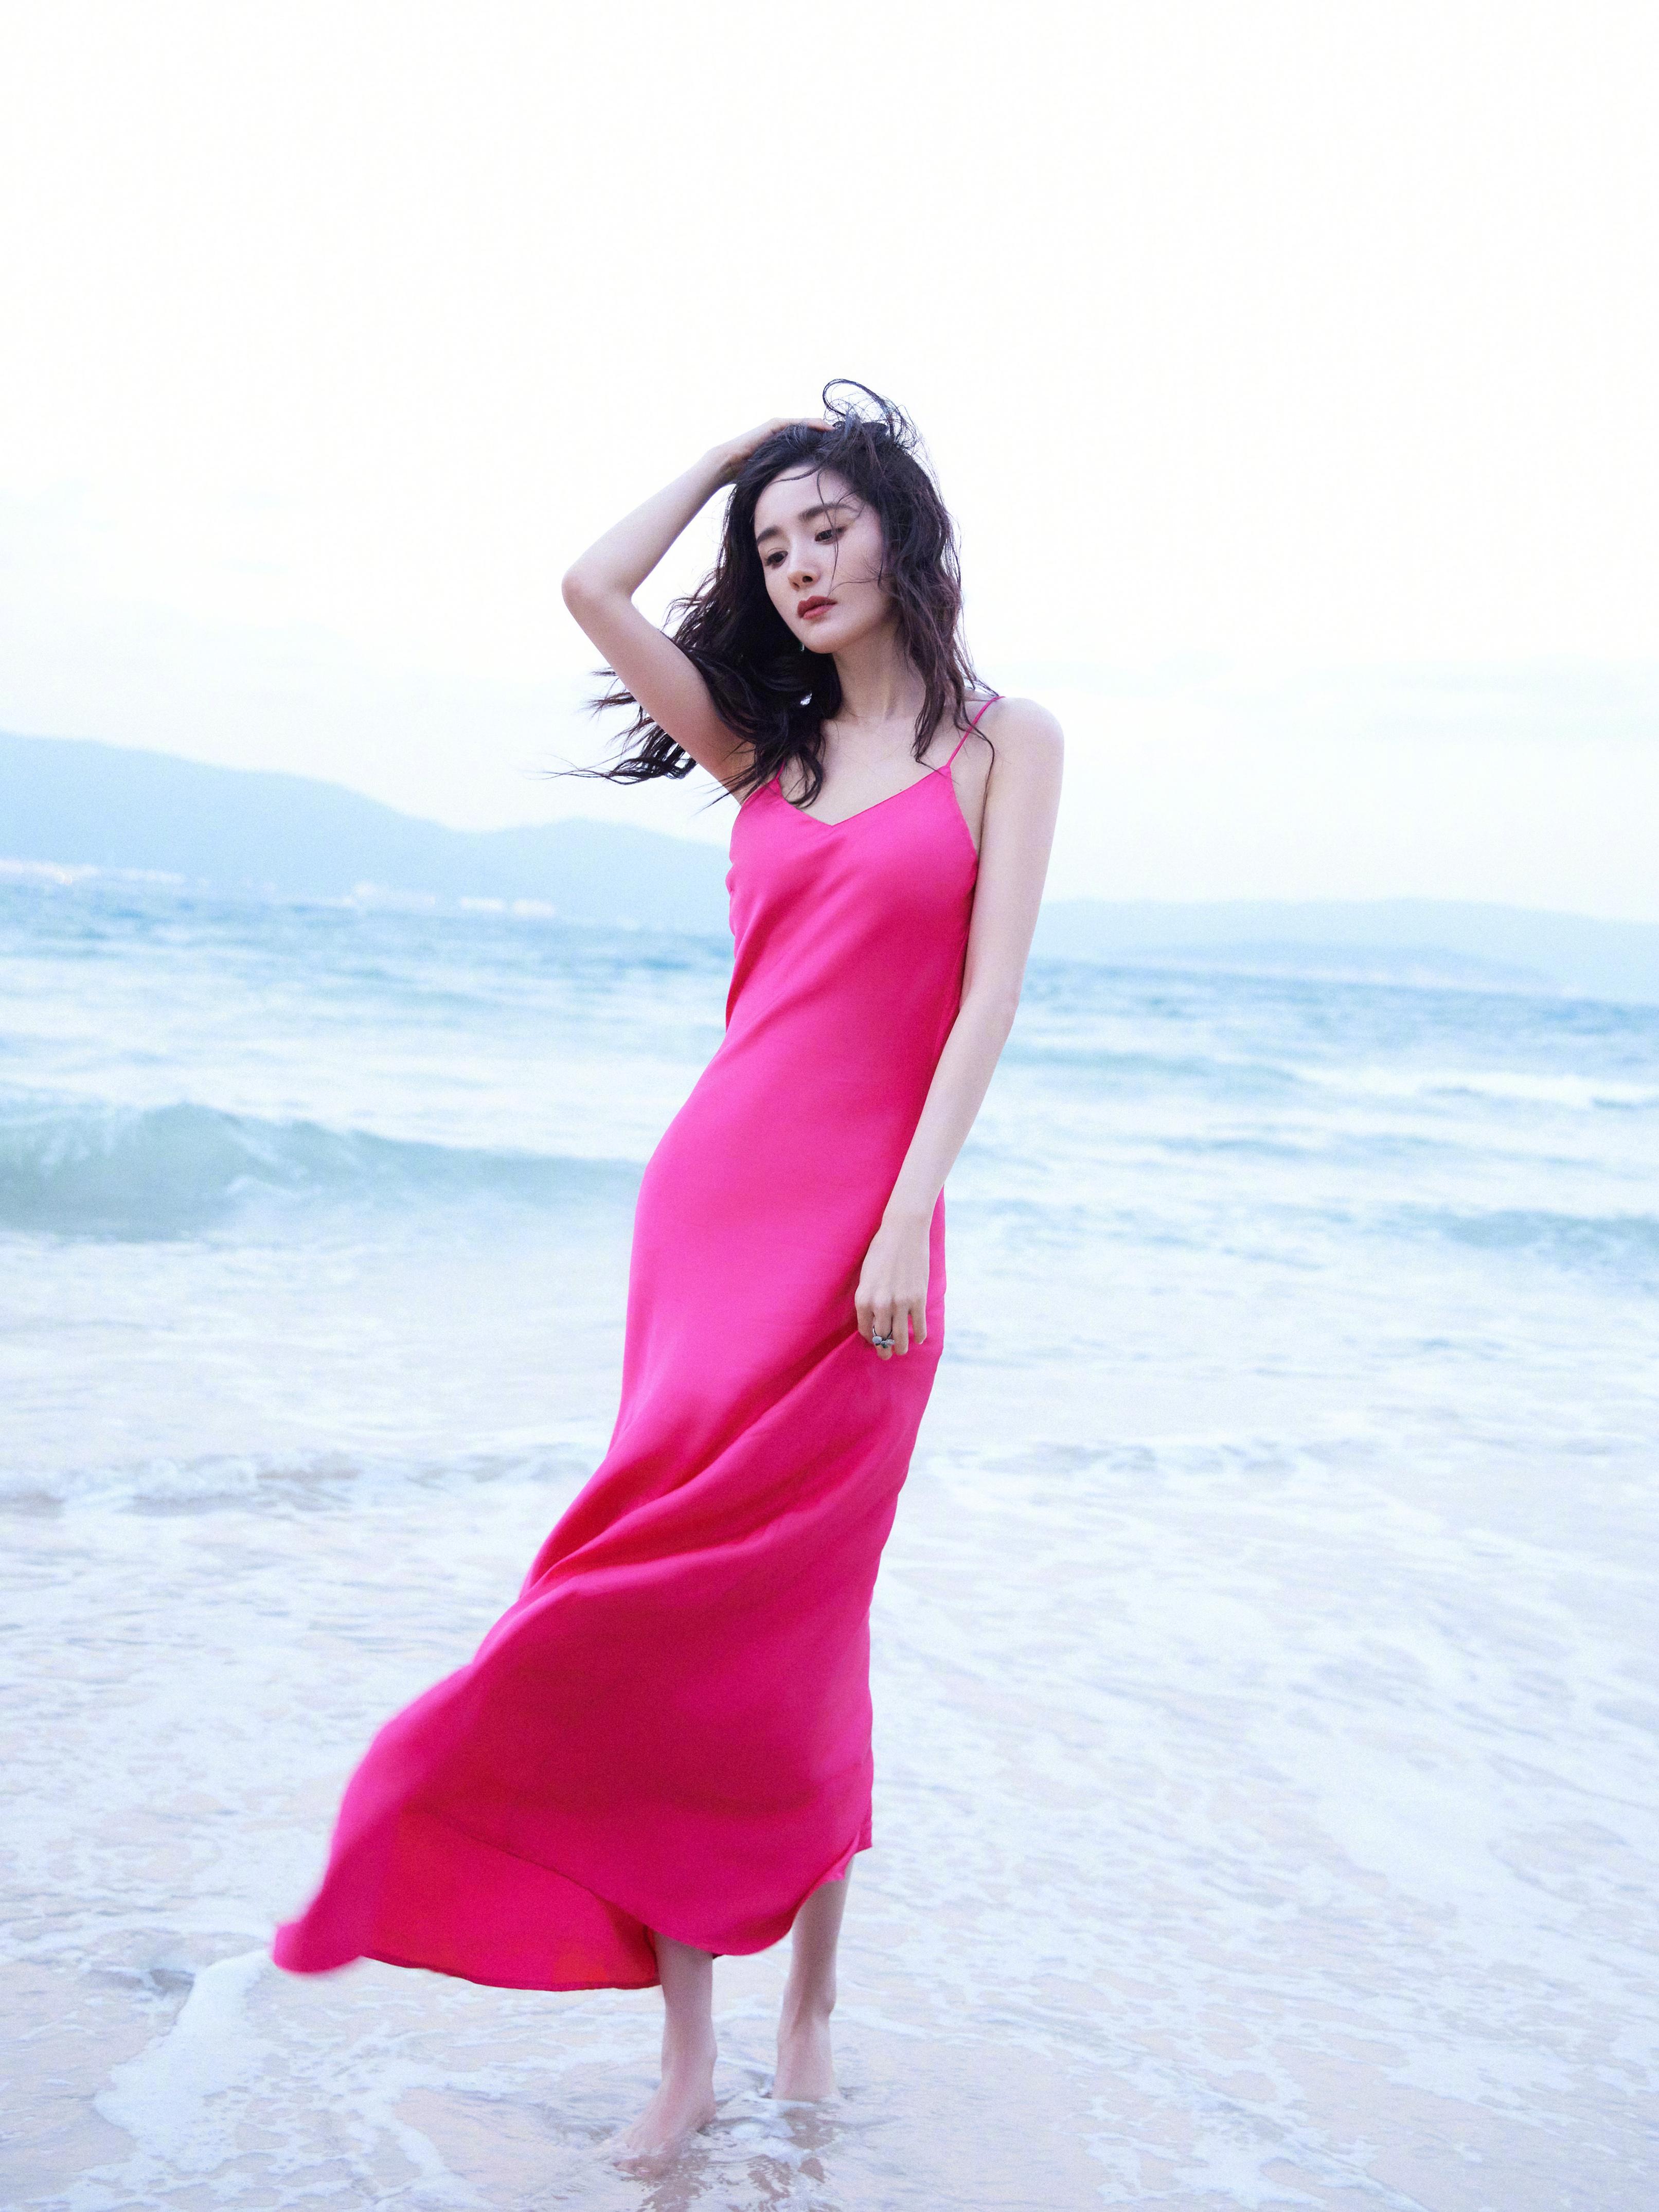 山青水暖，瑰丽动人，大美女杨幂红色吊带连衣裙海边性感写真。,1 (2)